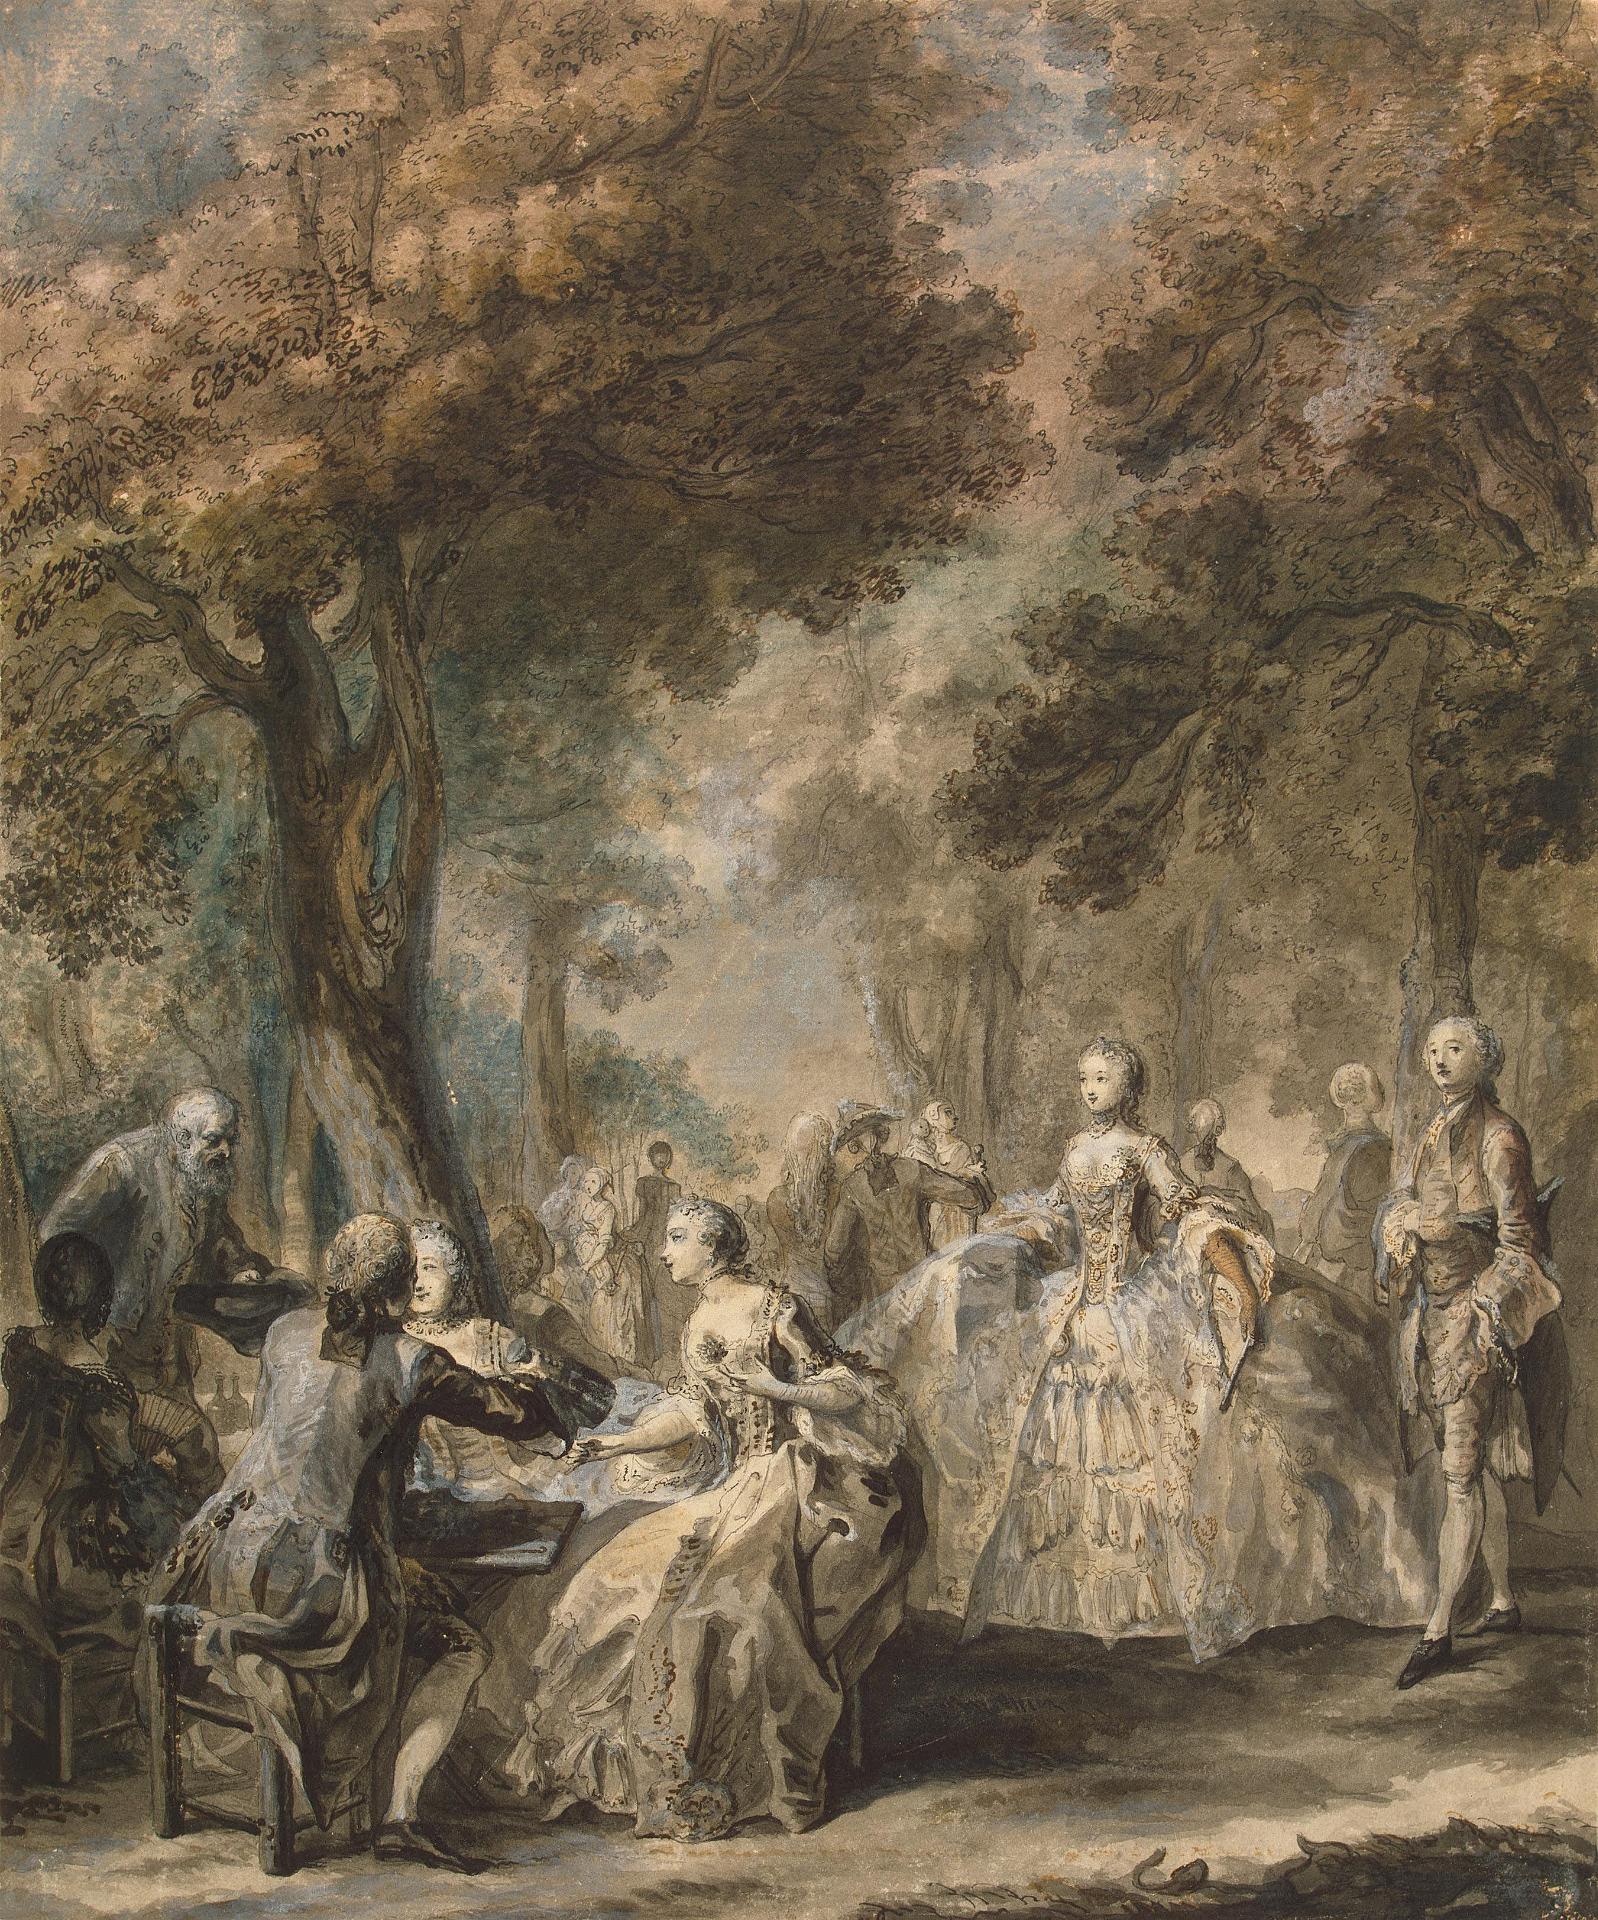 Габриель де Сент-Обен. "Общество на прогулке". 1760-1761.